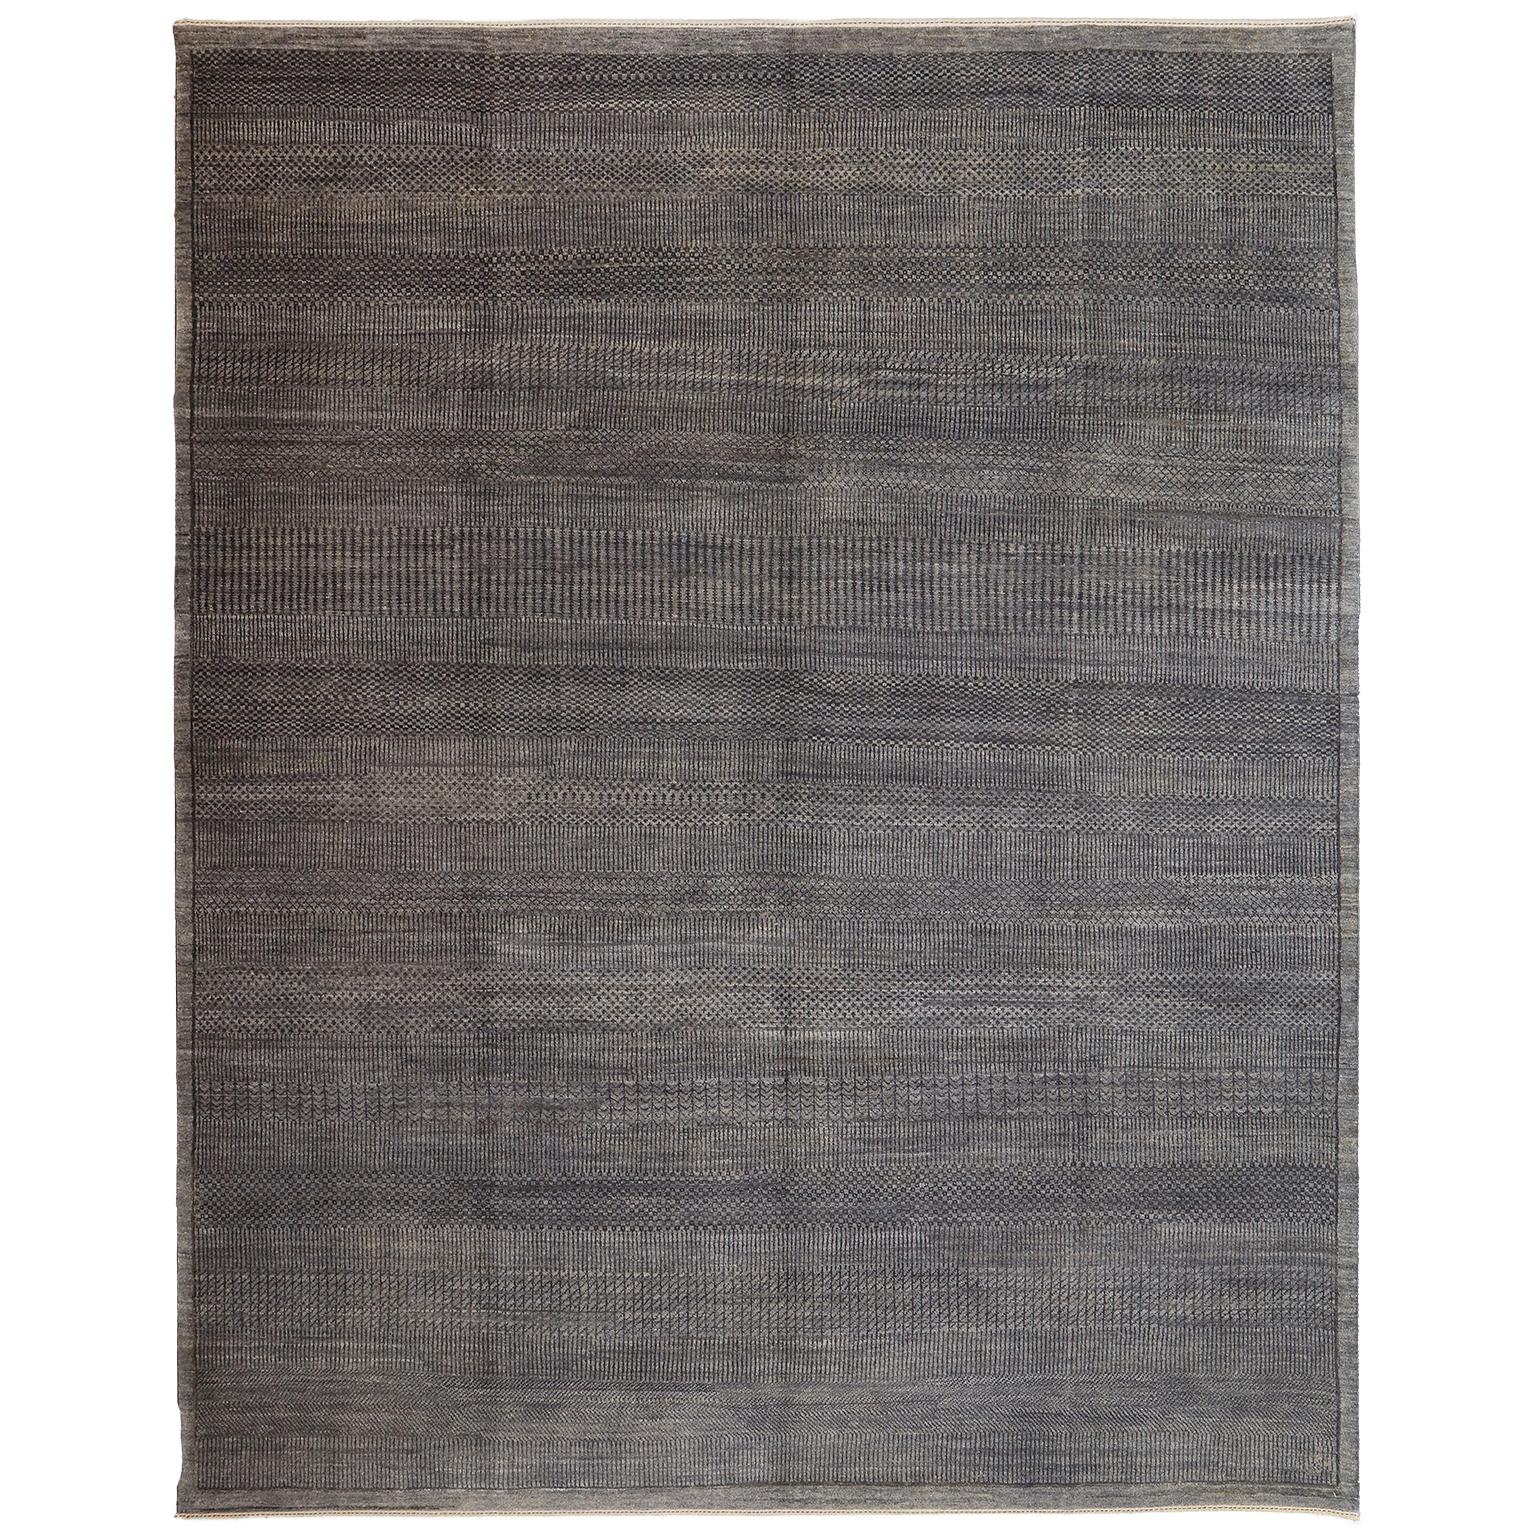 Orley Shabahang "Rain" Contemporary Persian Rug, Gray, 8x10